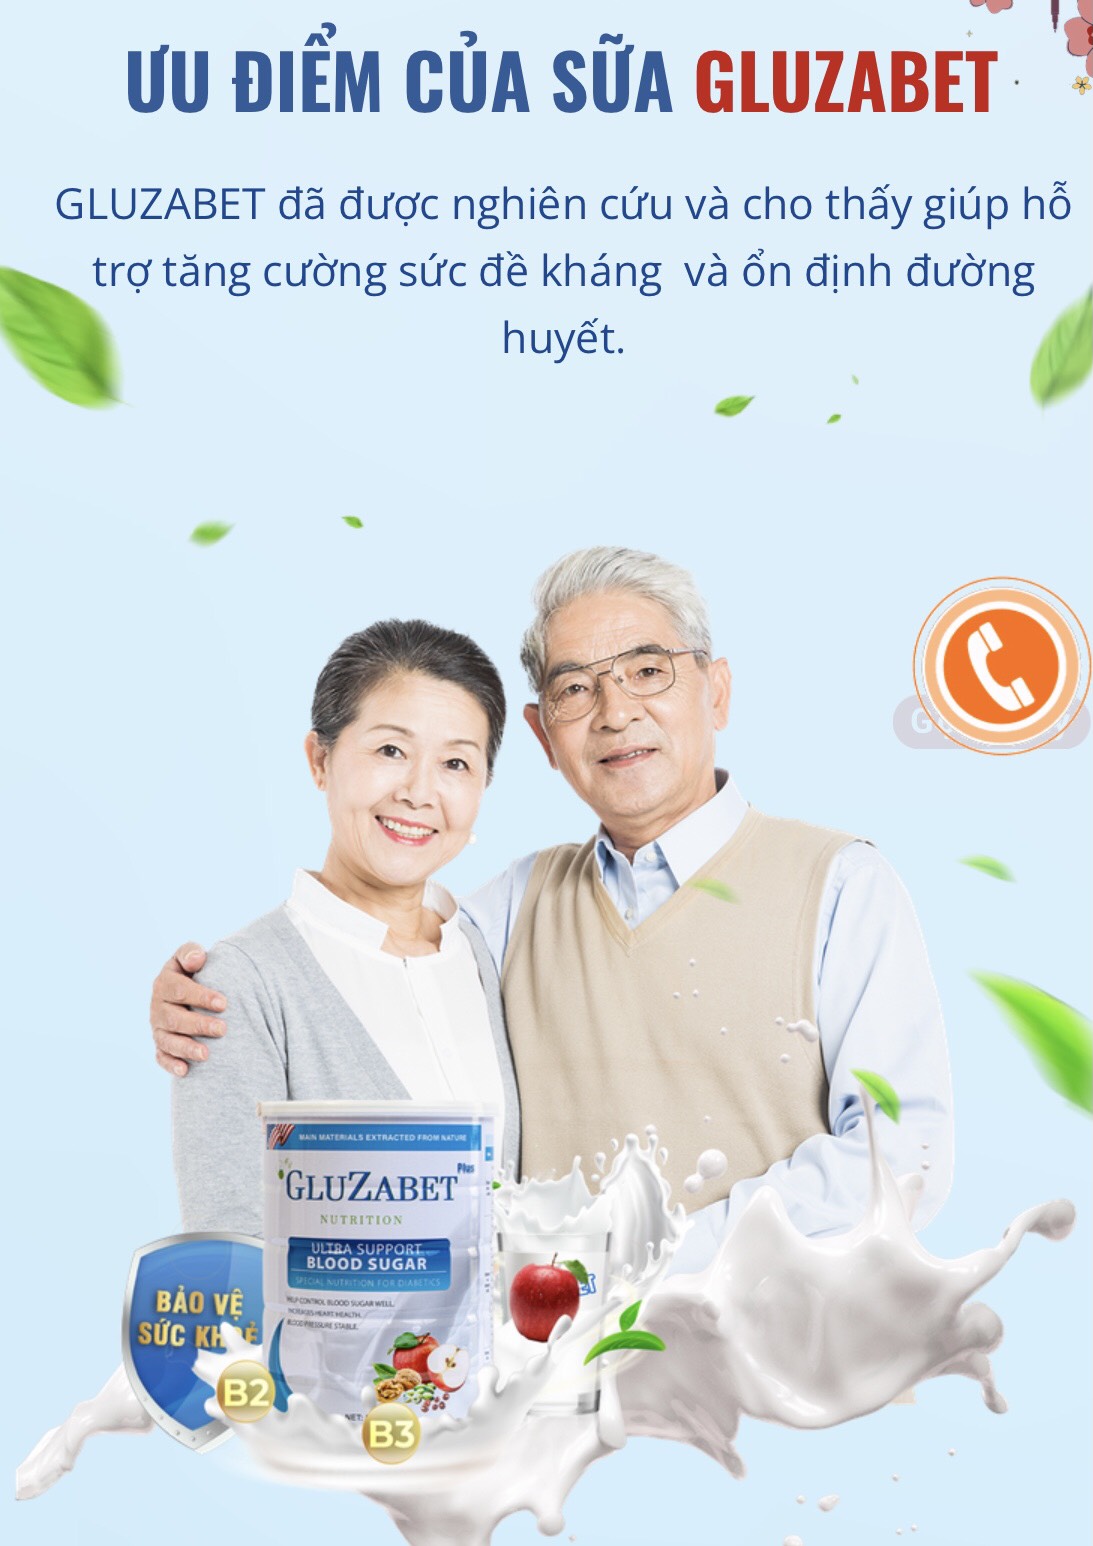 TPBVSK GluZabet tự nhận là sữa non tiểu đường cố tình quảng cáo như thuốc trị bệnh?